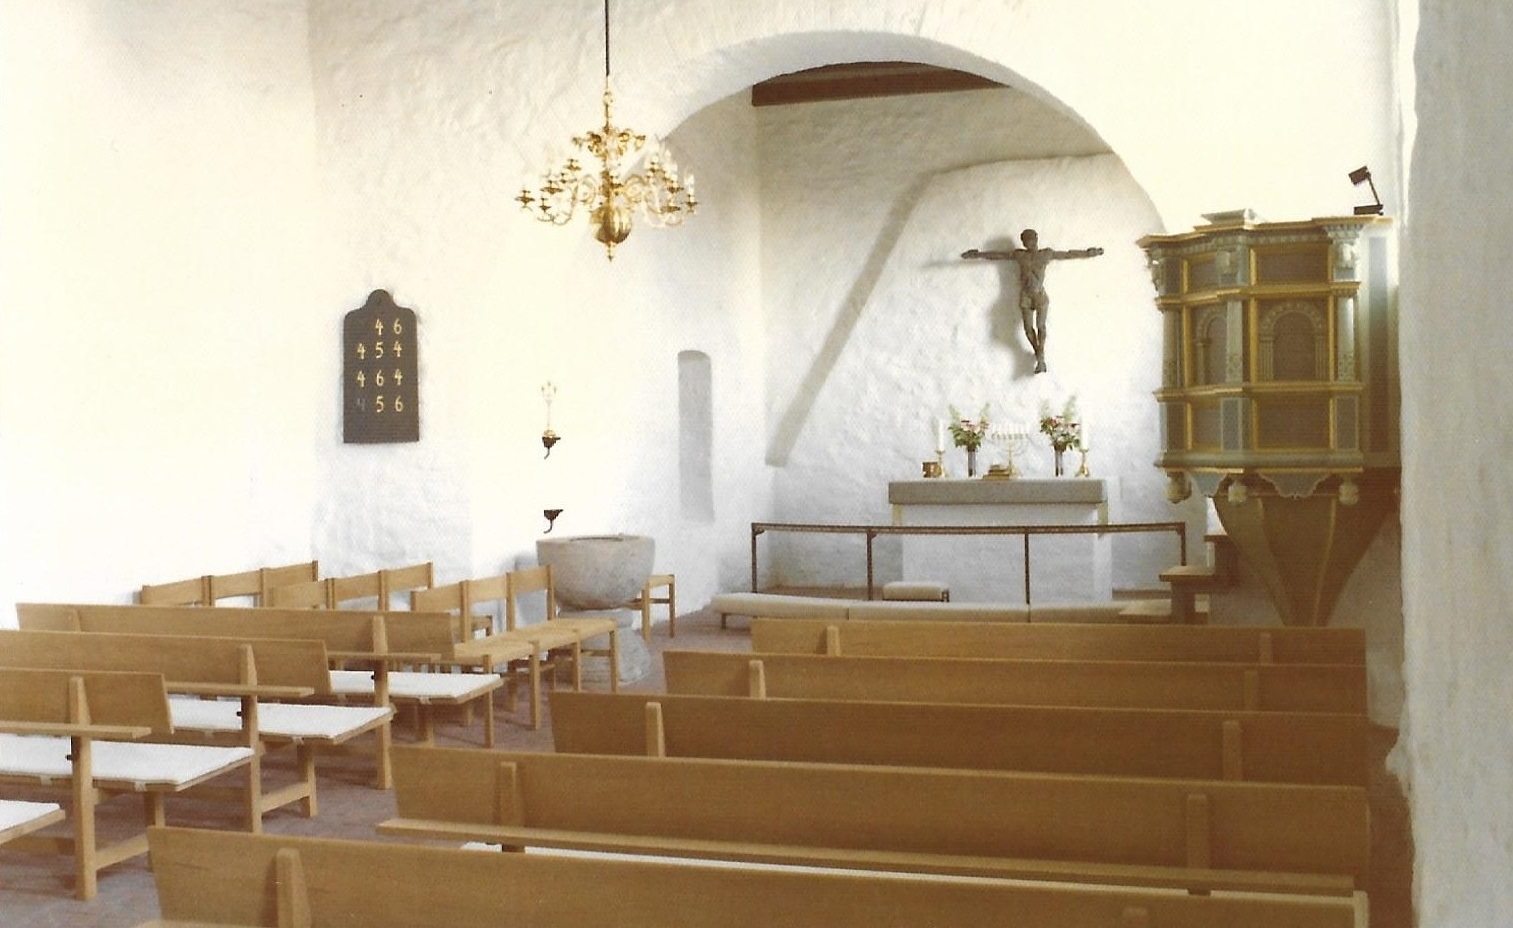 På dette billede af Vind Kirkes indre ses tydeligt egetræsbænkene, der i sin tid blev erhvervet for penge testamenteret af pastor Peter Blicher (1876-1958).